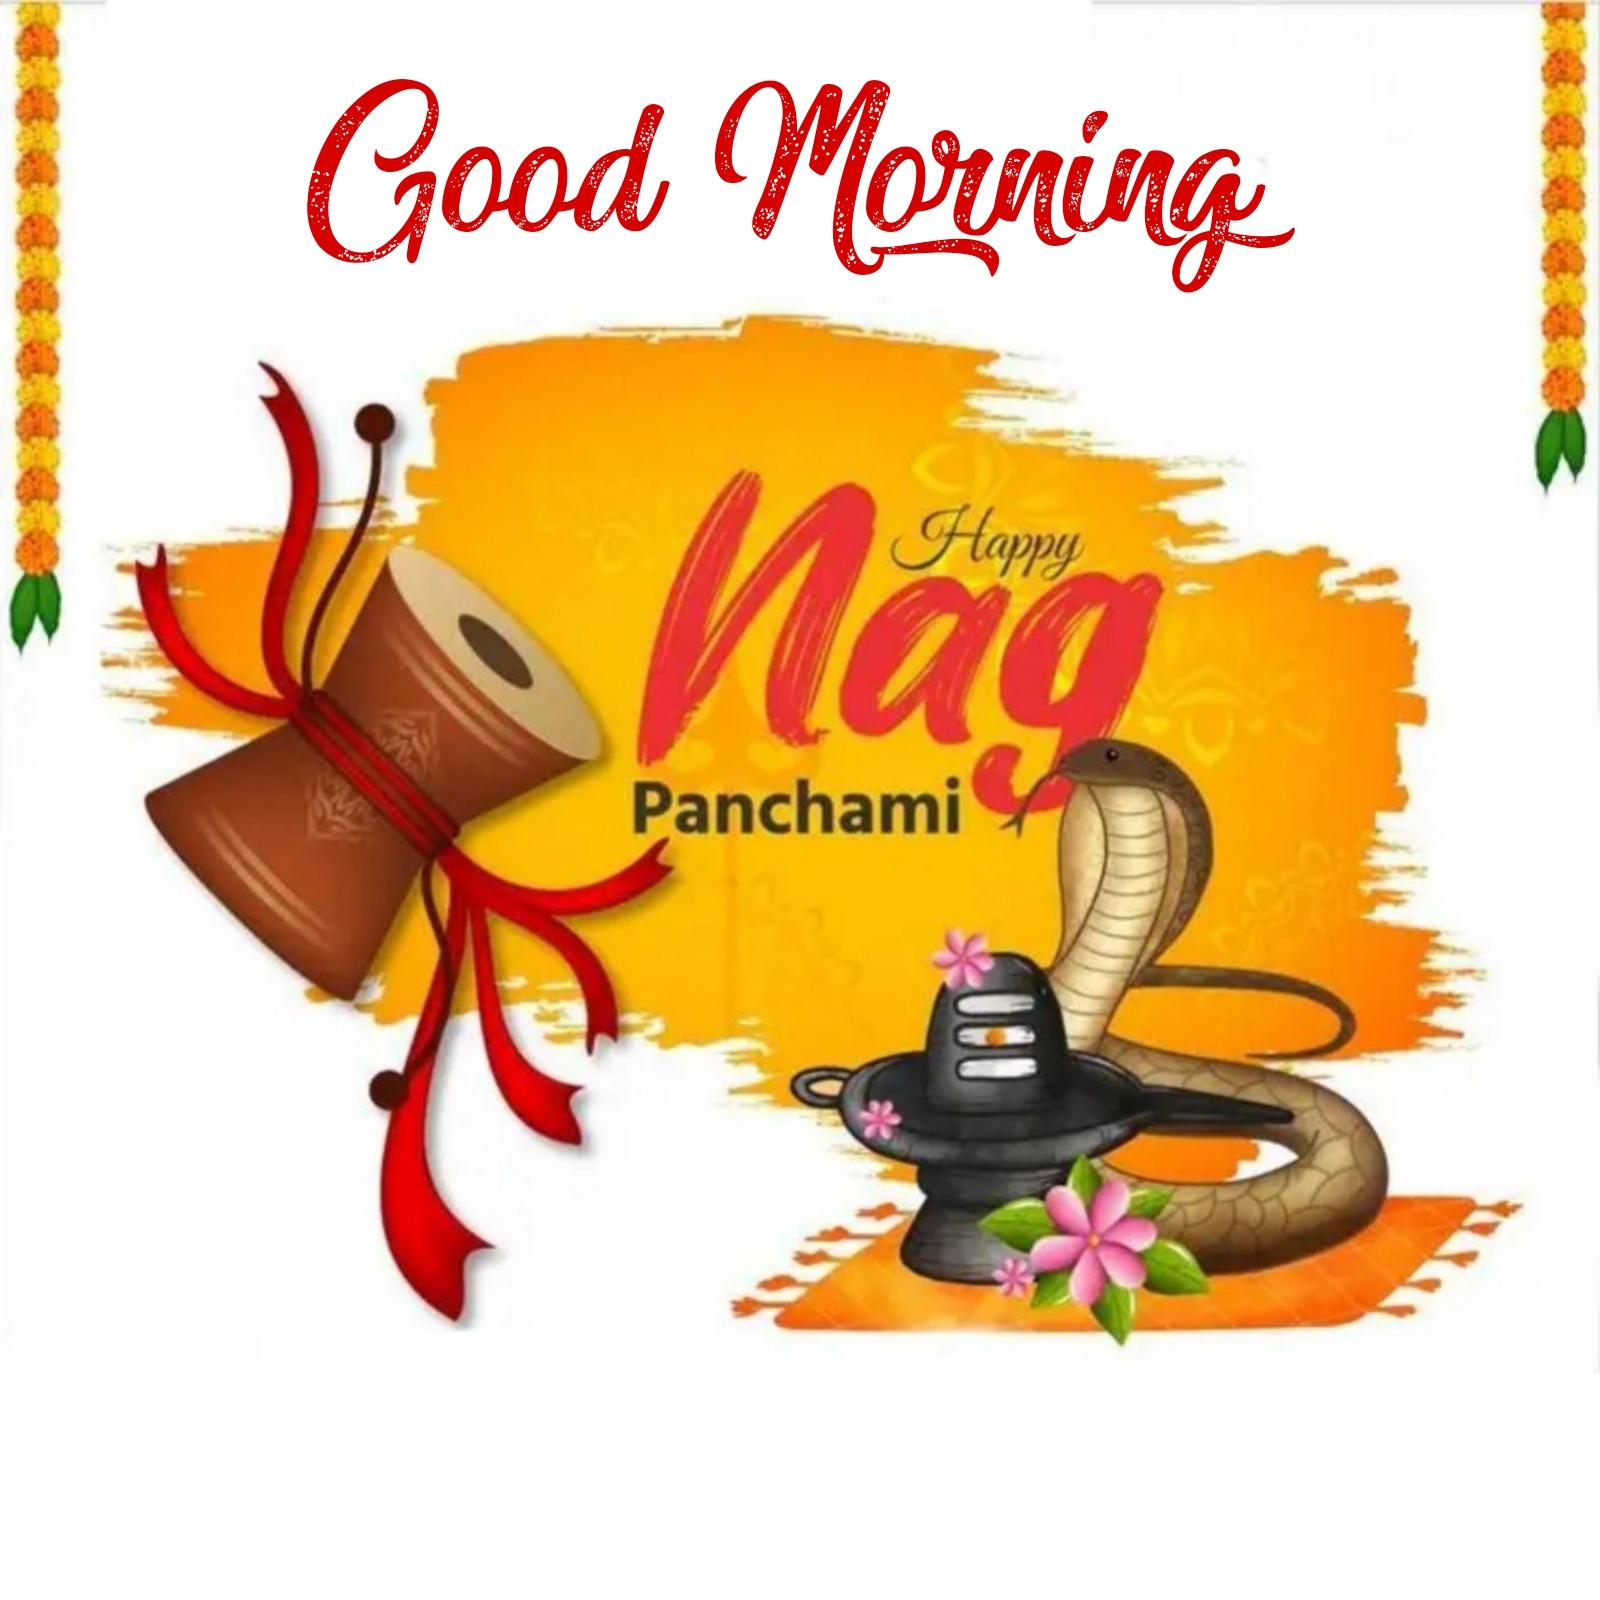 Good Morning Happy Nag Panchami 2022 Images Hd Download